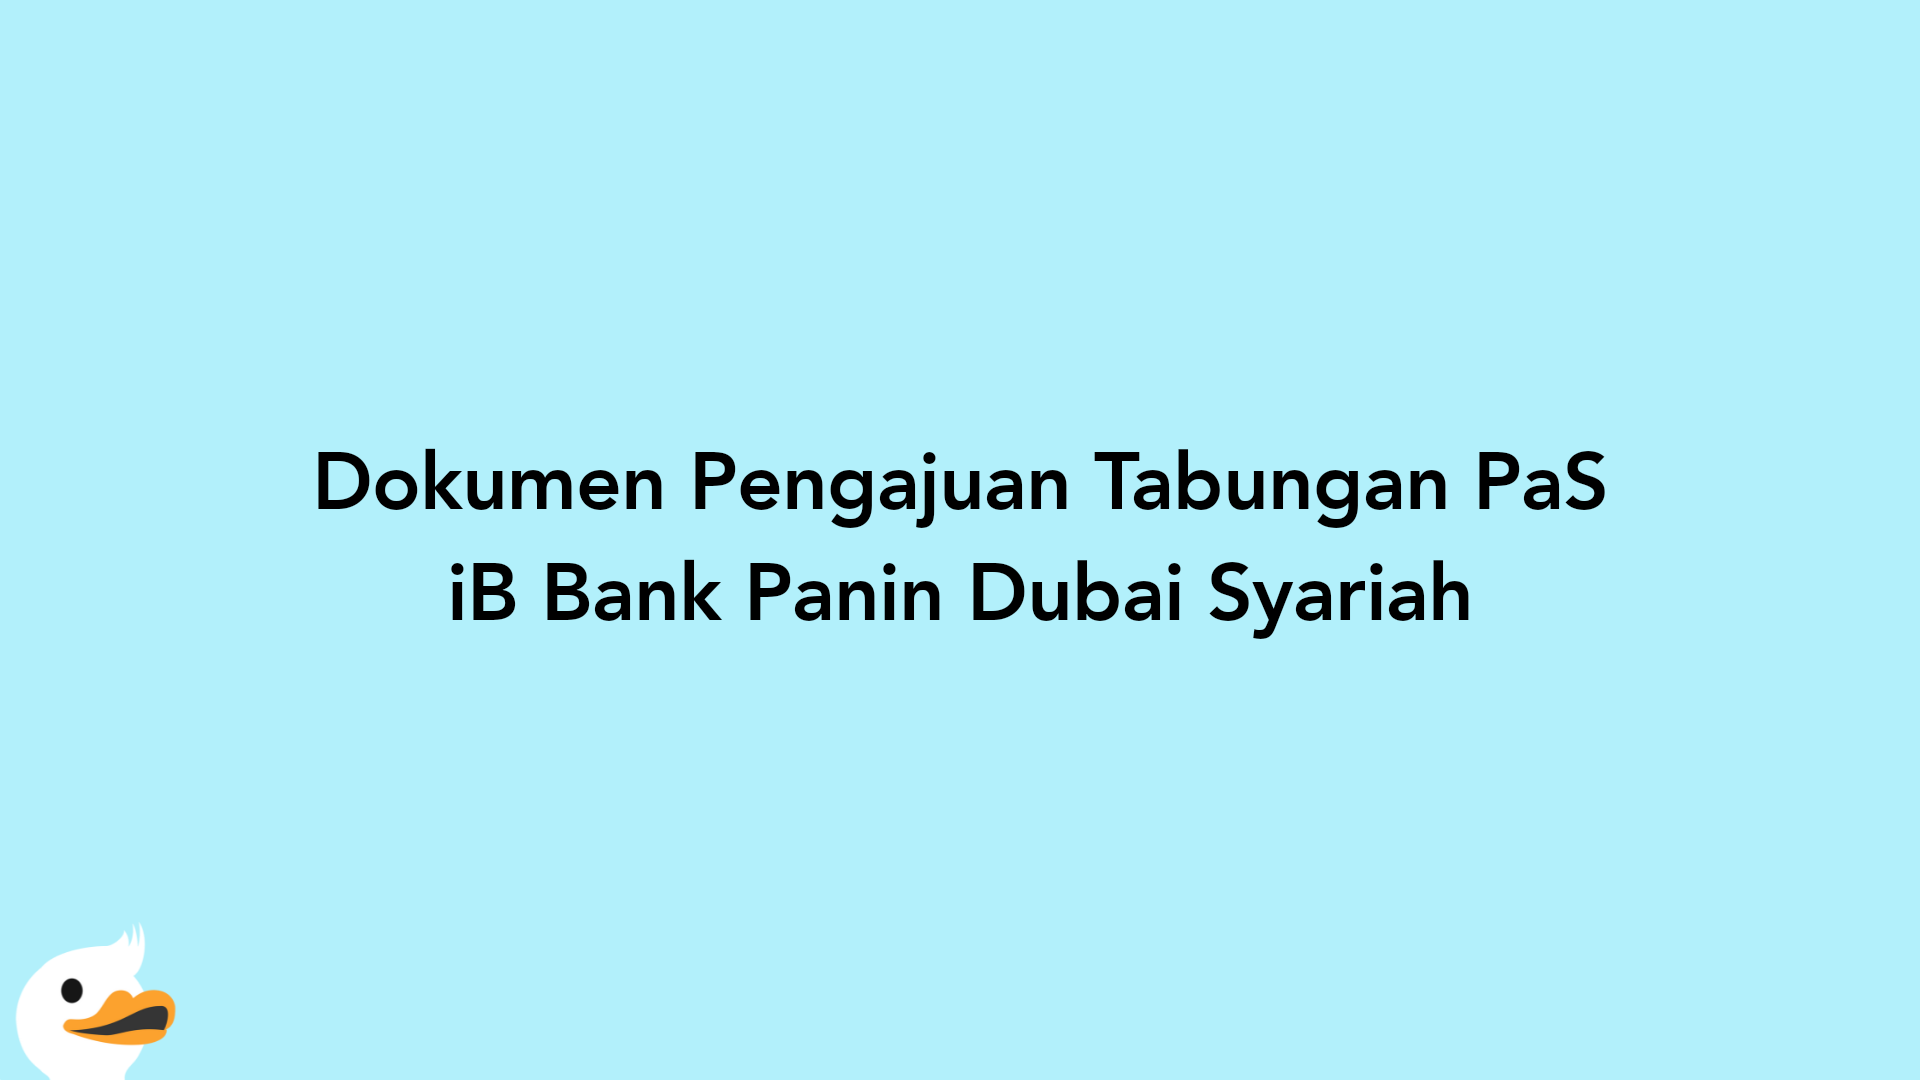 Dokumen Pengajuan Tabungan PaS iB Bank Panin Dubai Syariah